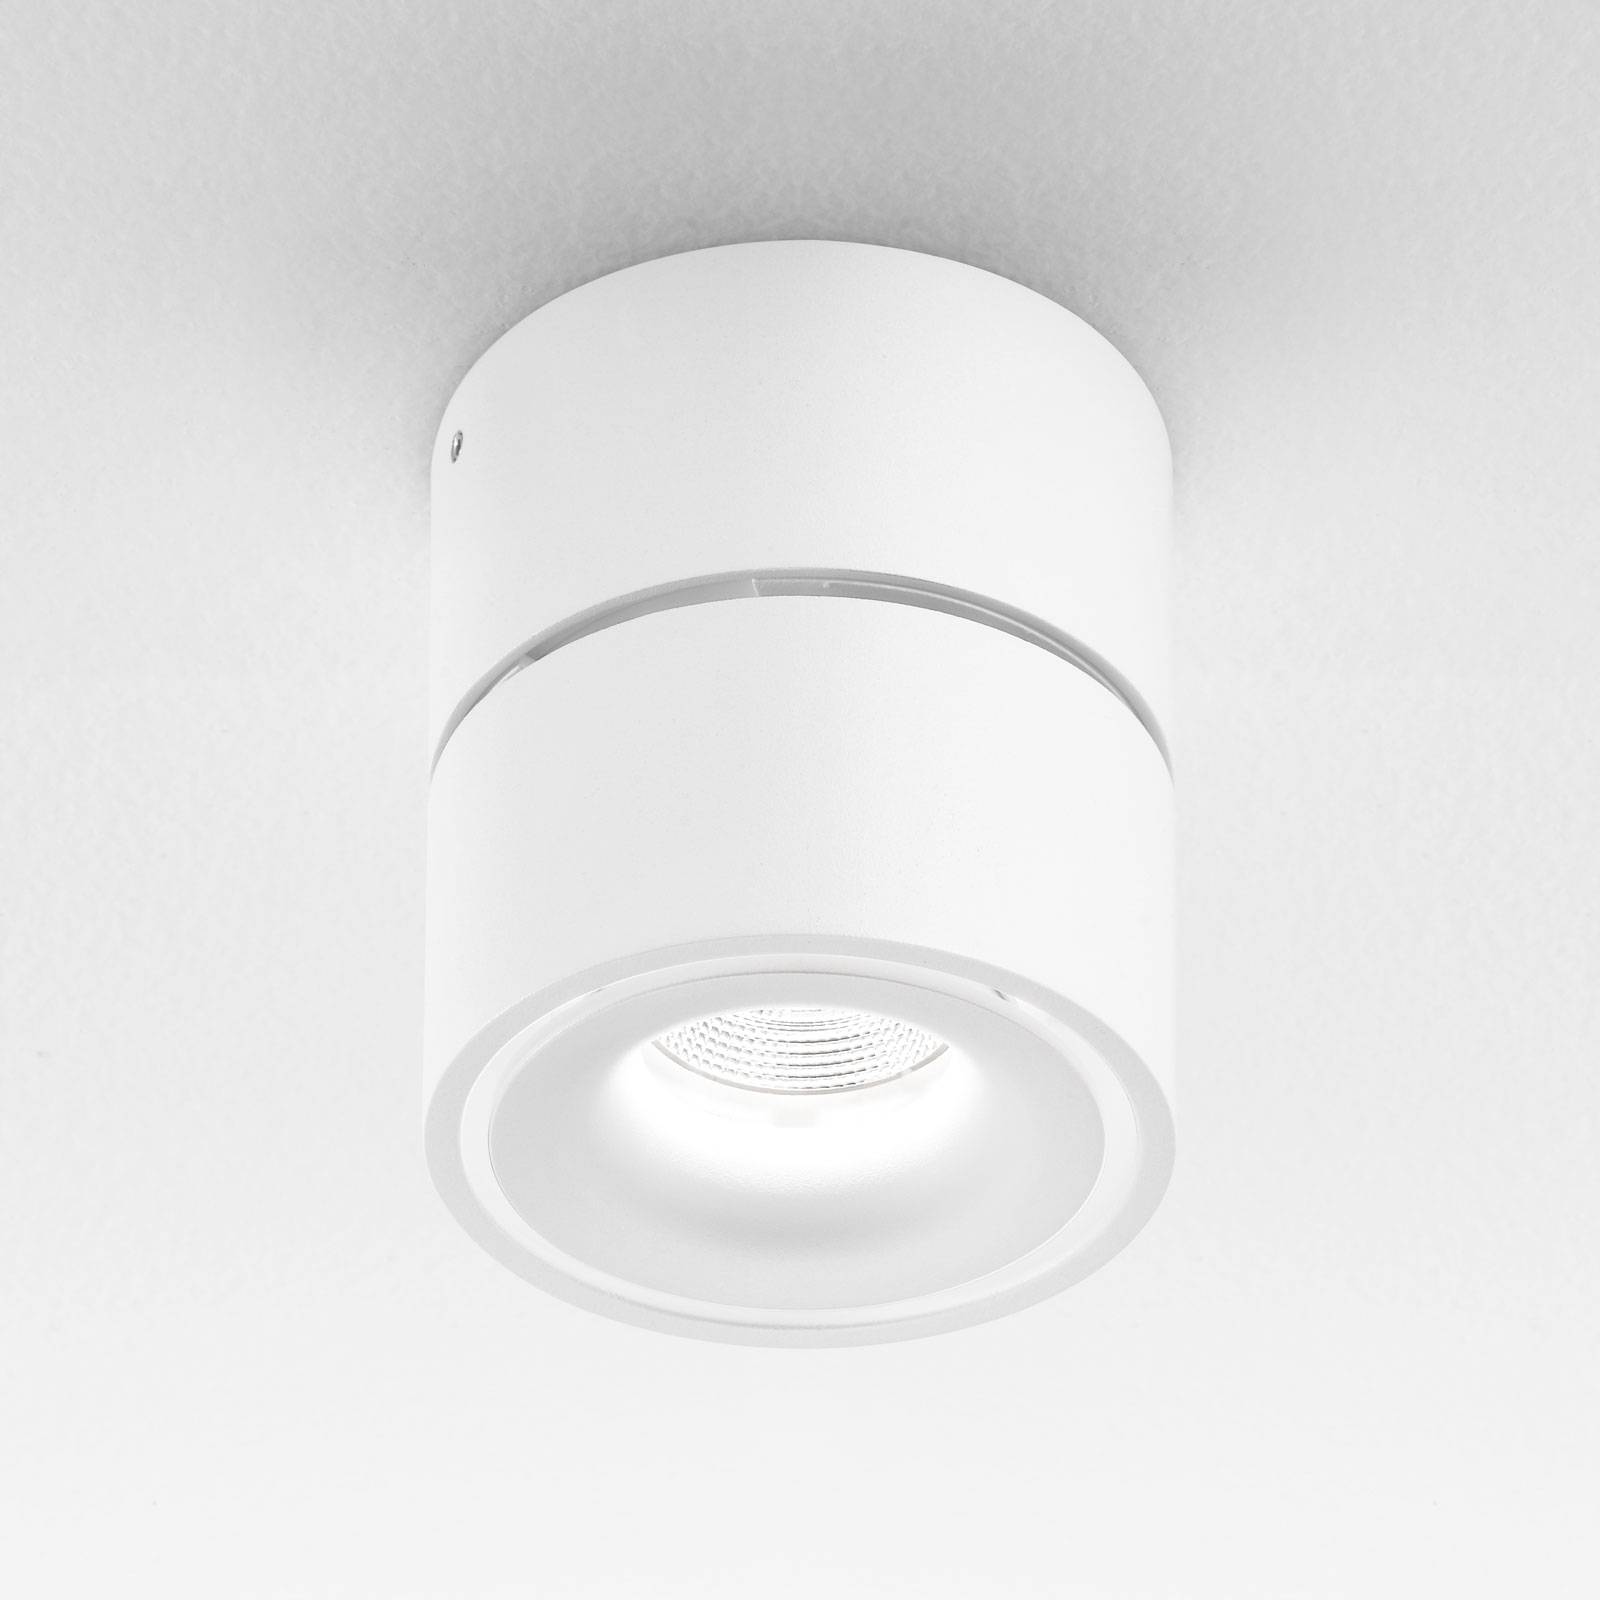 Egger Clippo spot pour plafond LED, blanc, 3 000 K